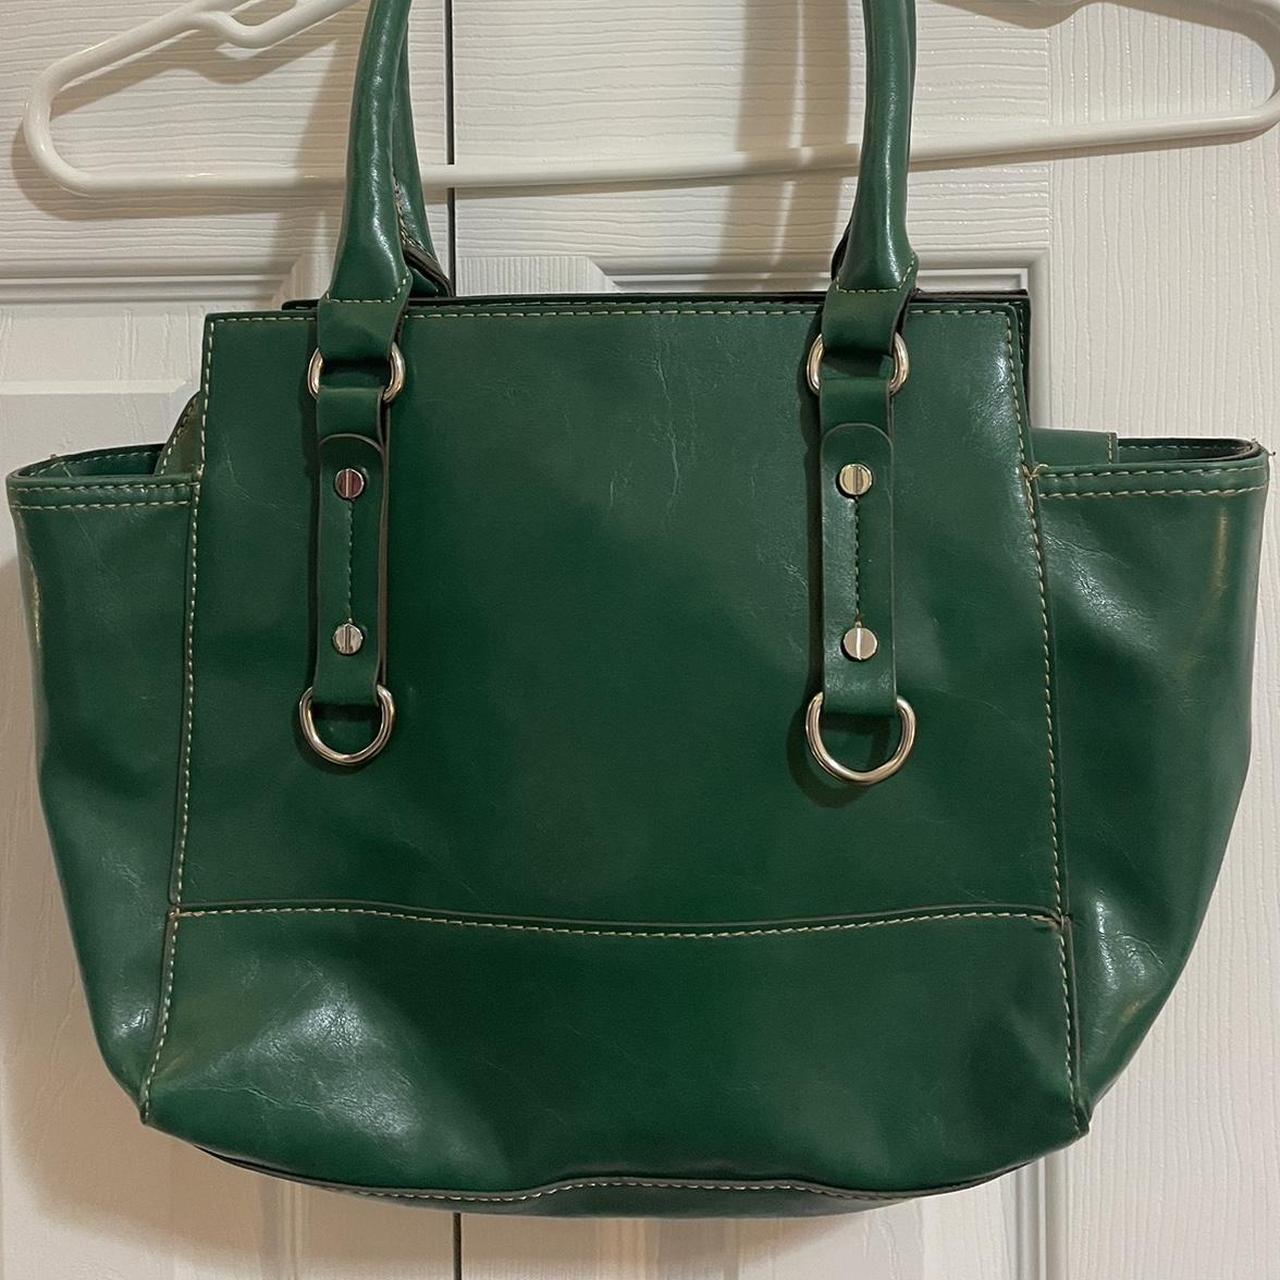 Super cute green handbag - Depop